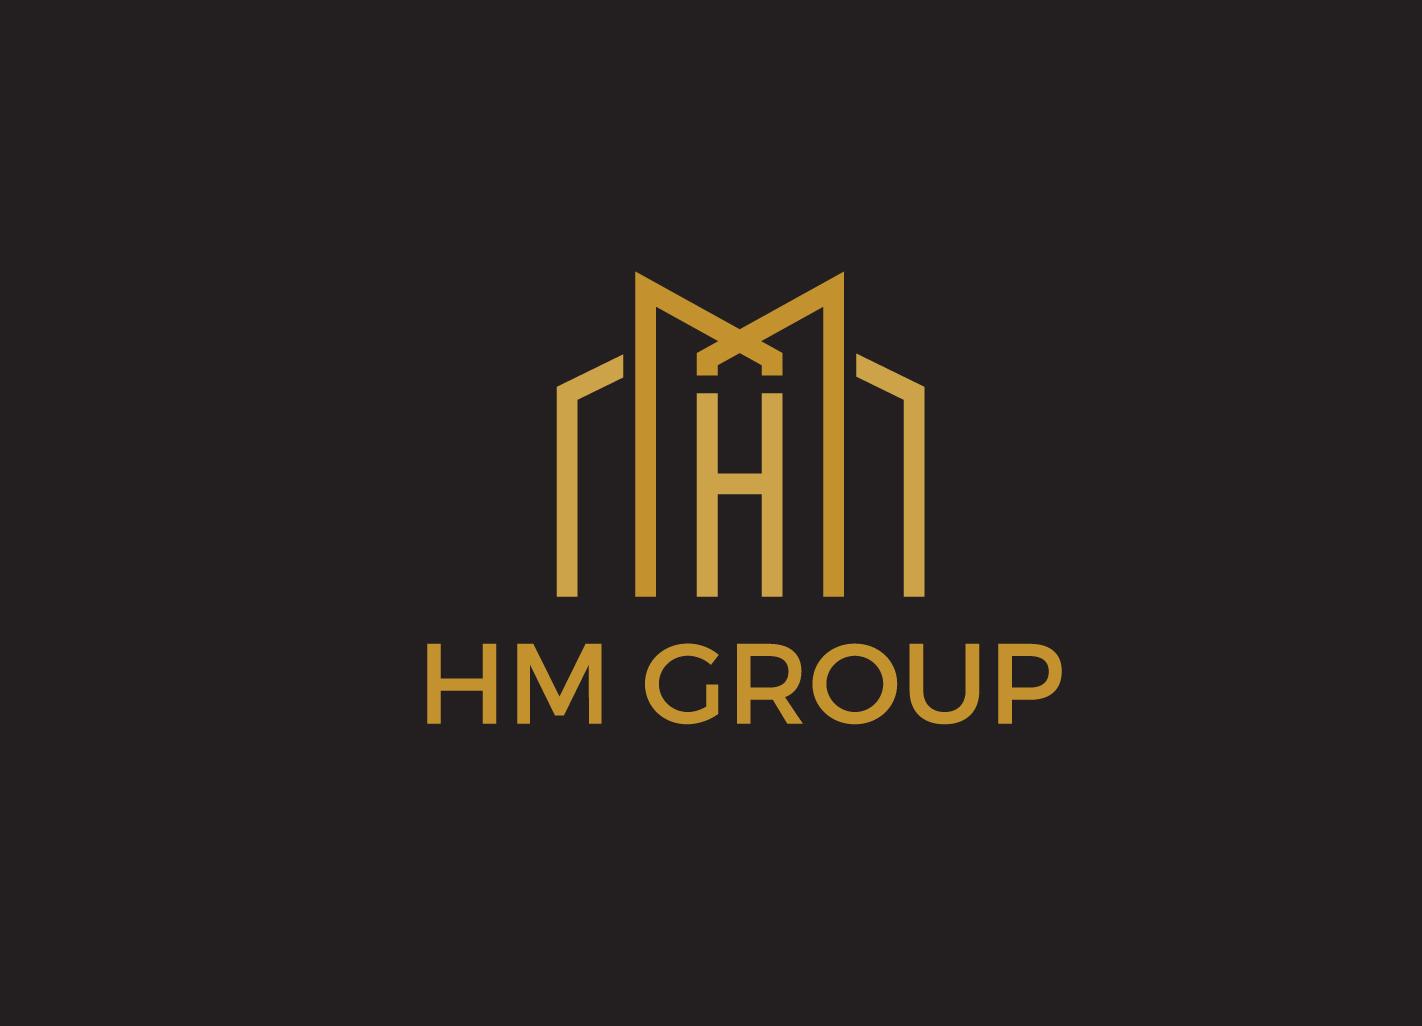 HM Logo - Elegant, Professional, Real Estate Logo Design for HM GROUP by ...